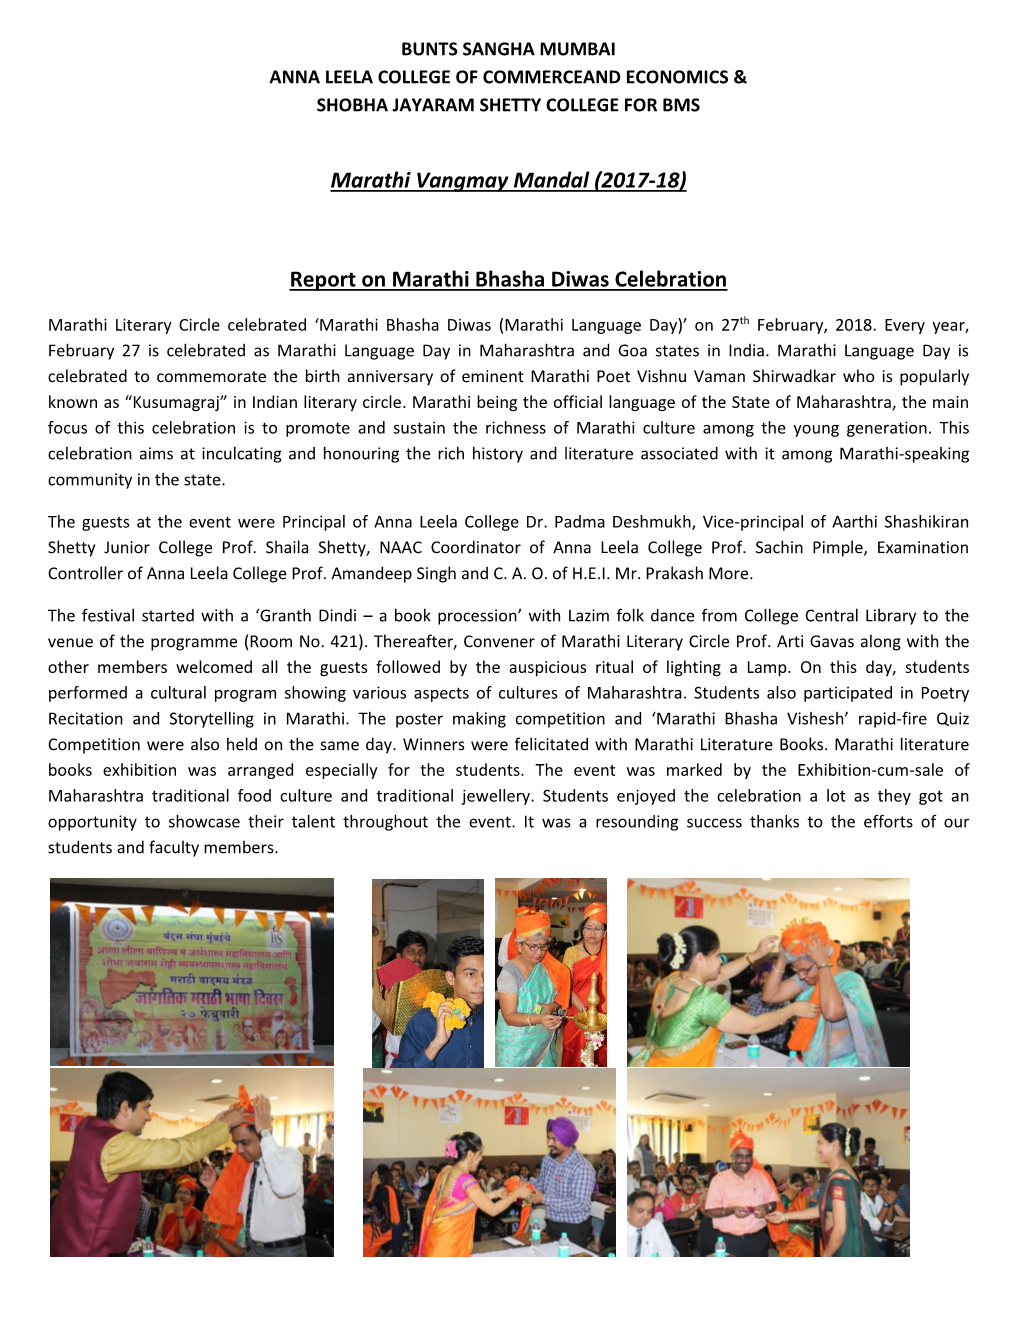 Report on Marathi Bhasha Diwas Celebration